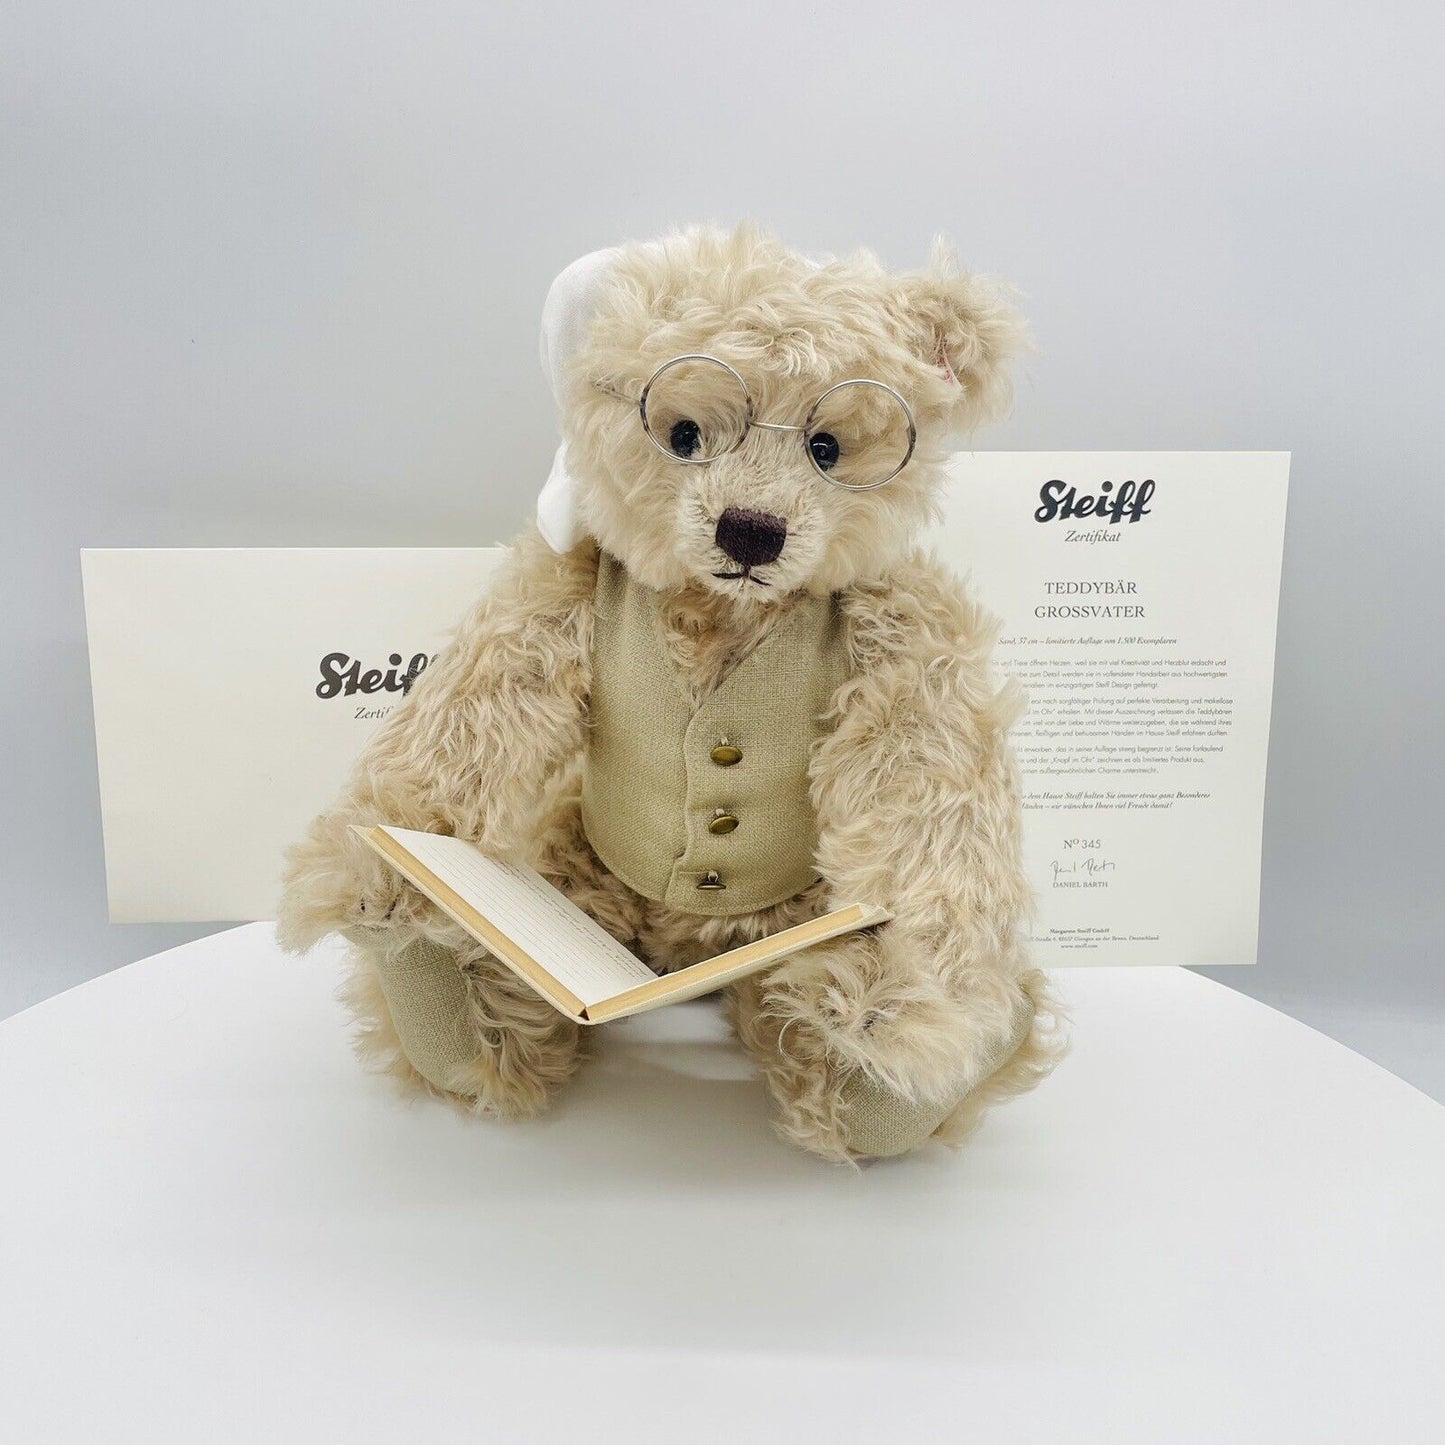 Steiff Teddybär Großvater Opa Märchen 034169 limitiert 1500 aus 2014 37cm Mohair